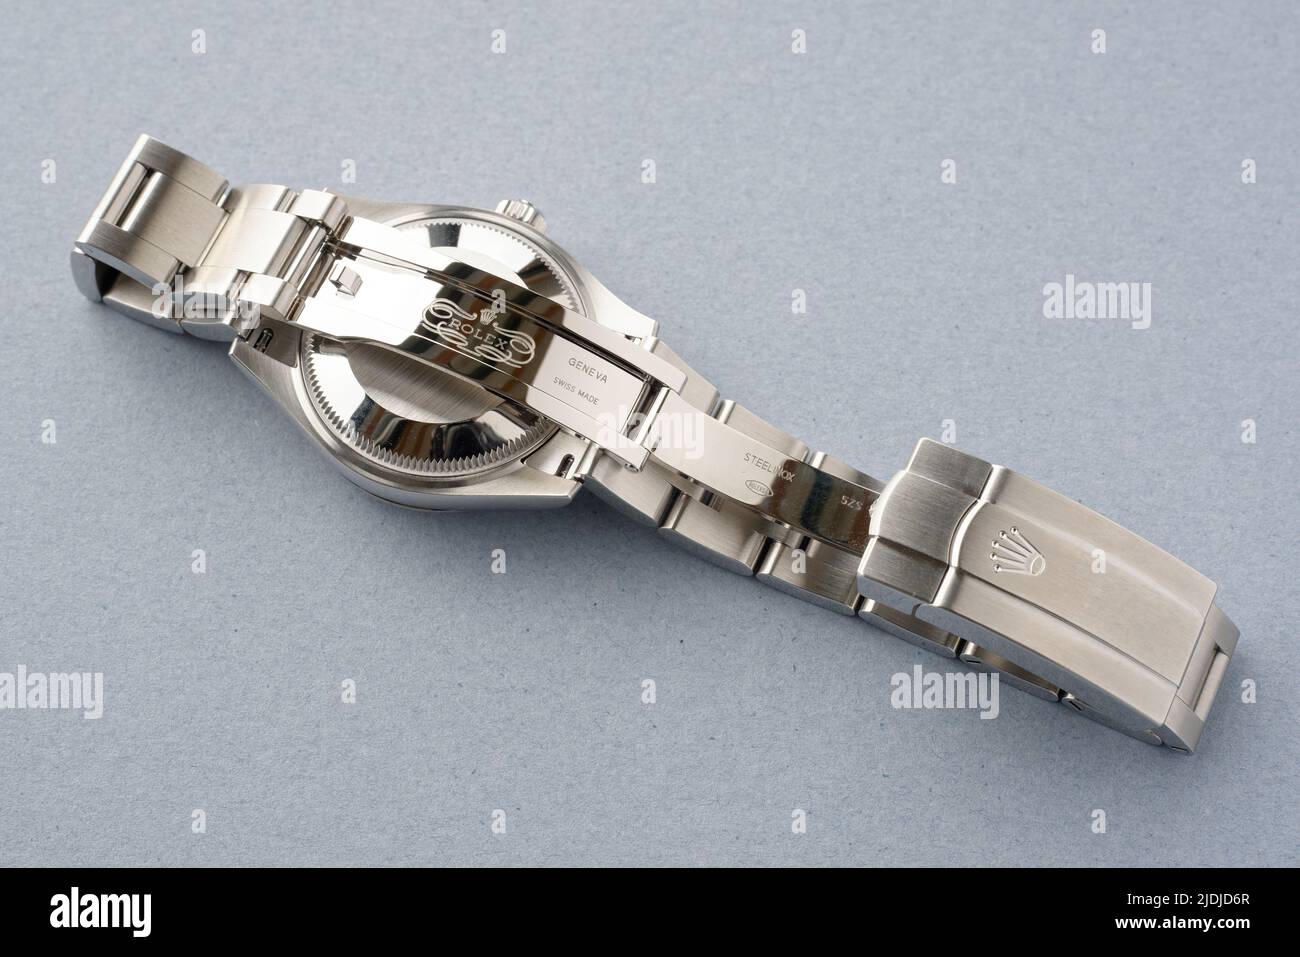 La parte posterior de un reloj de pulsera Rolex que muestra la correa metálica. Foto de stock